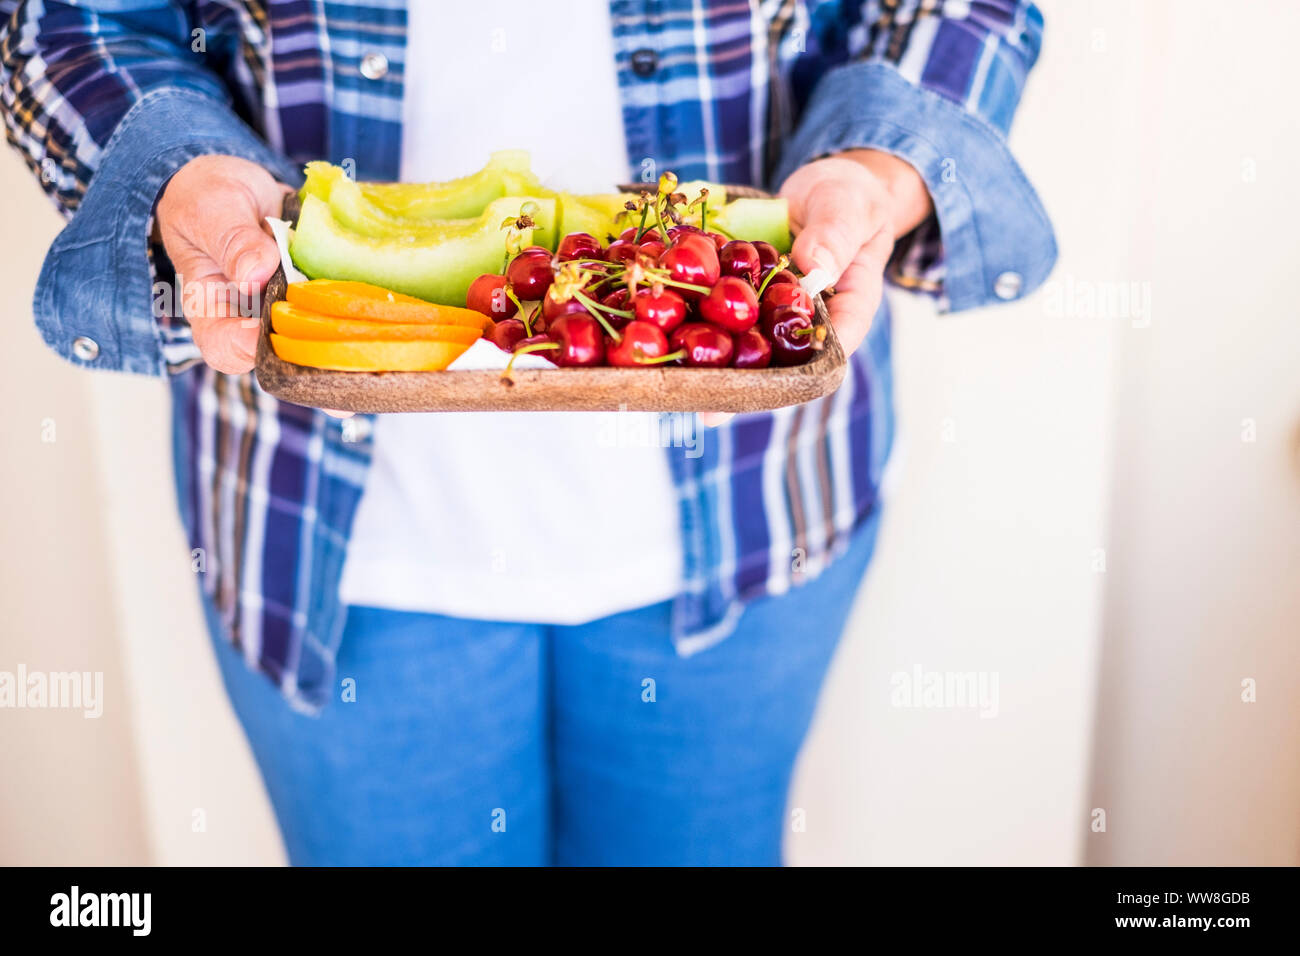 Alte kaukasische Frau senior kaukasischen in lässigen Jeans Kleidung bieten einige frische Früchte der Saison für Sie, Melone, Orange und Kirsche für eine gemischte Farben essen, um gesund zu bleiben und einen schönen Lebensstil haben Stockfoto